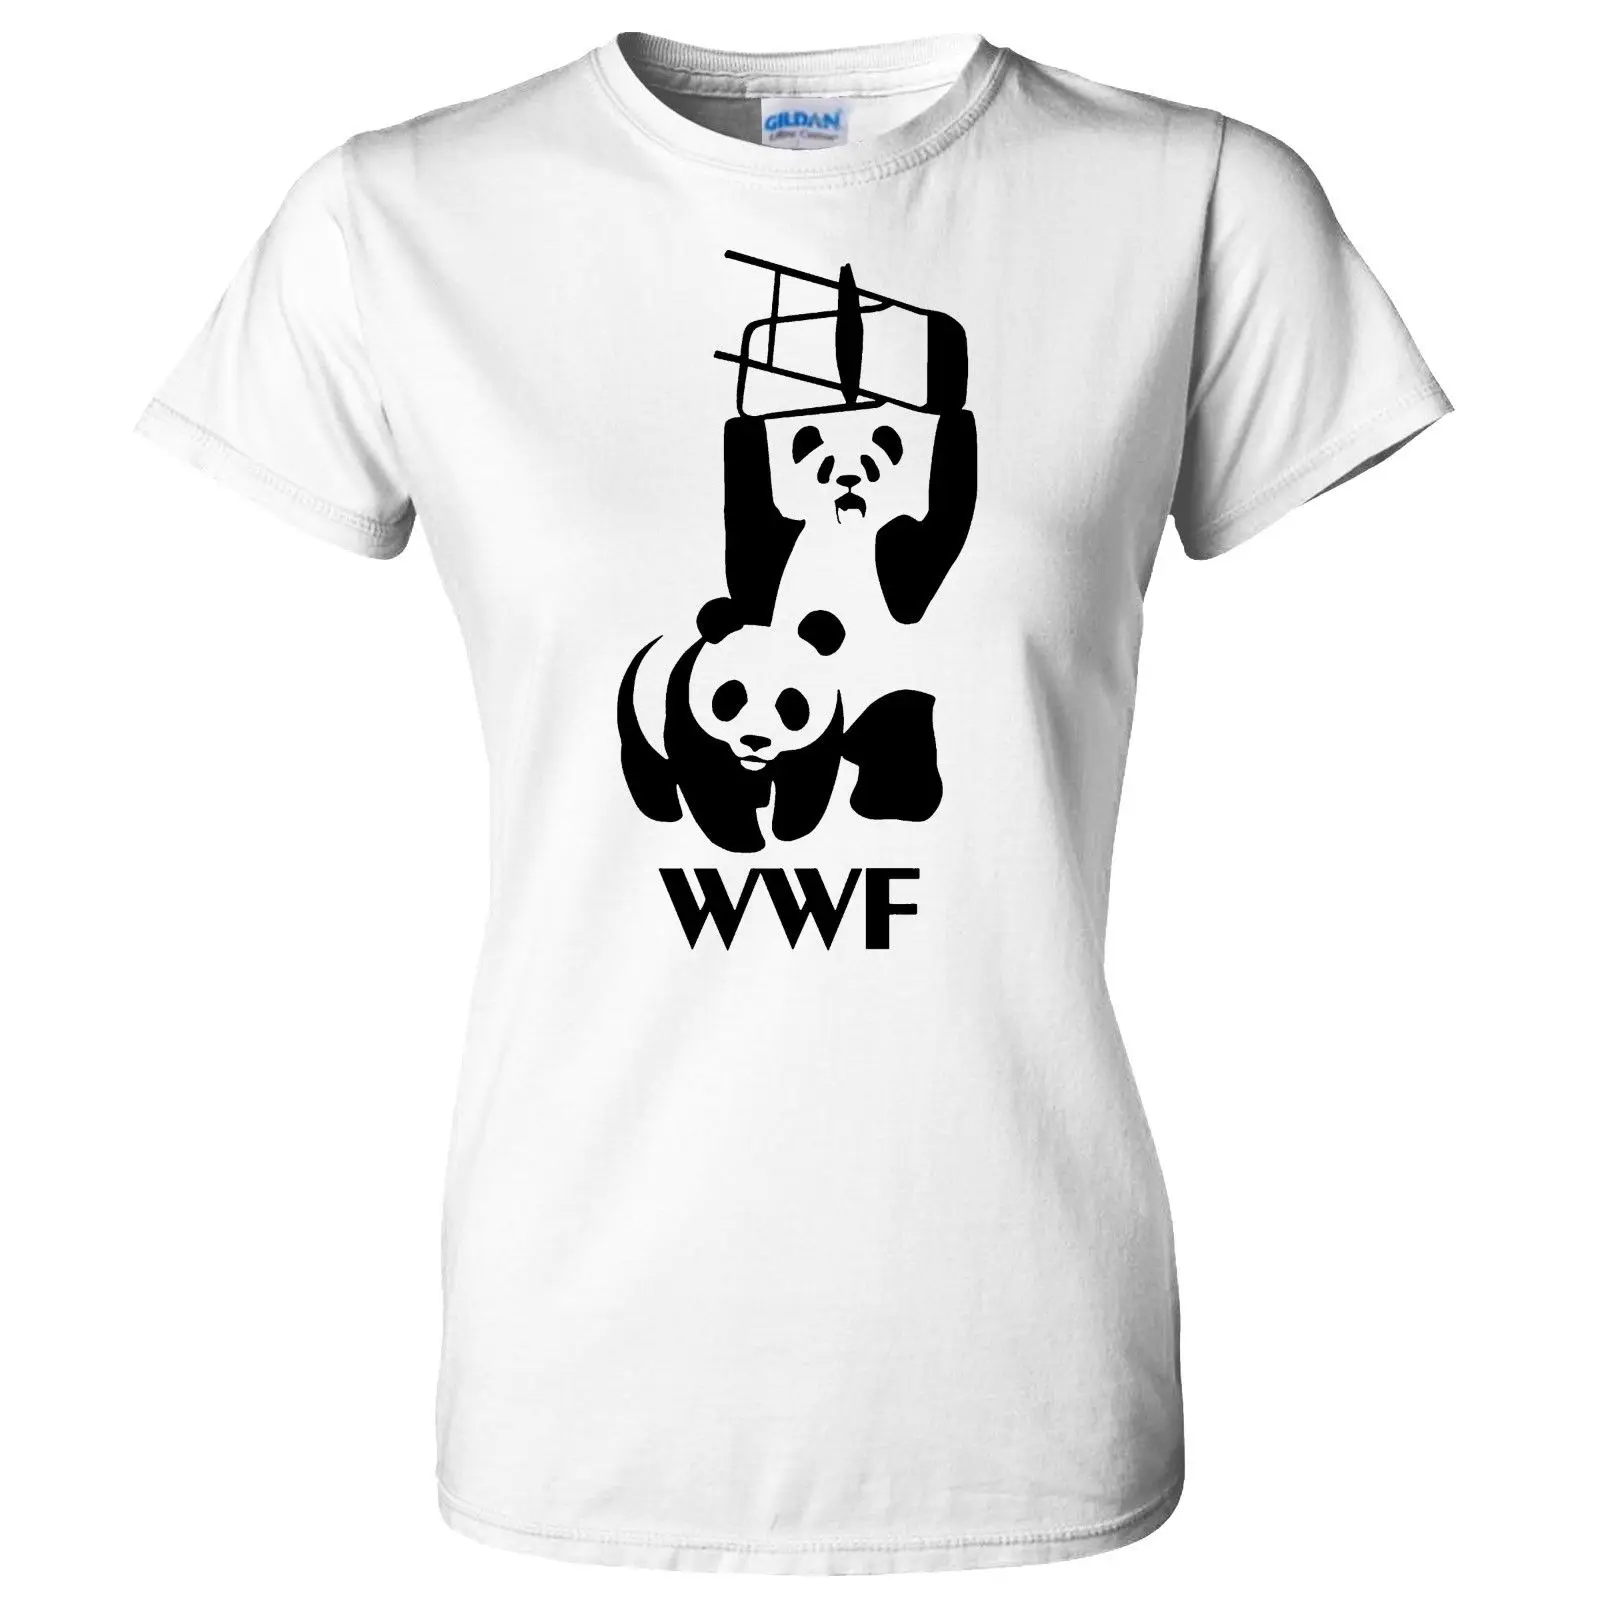 WWF المصارعة الباندا محاكاة ساخرة مضحك إمرأة T قميص بارد عارضة فخر t قميص الرجال للجنسين الأزياء التي شيرت شحن مجاني مضحك قمم